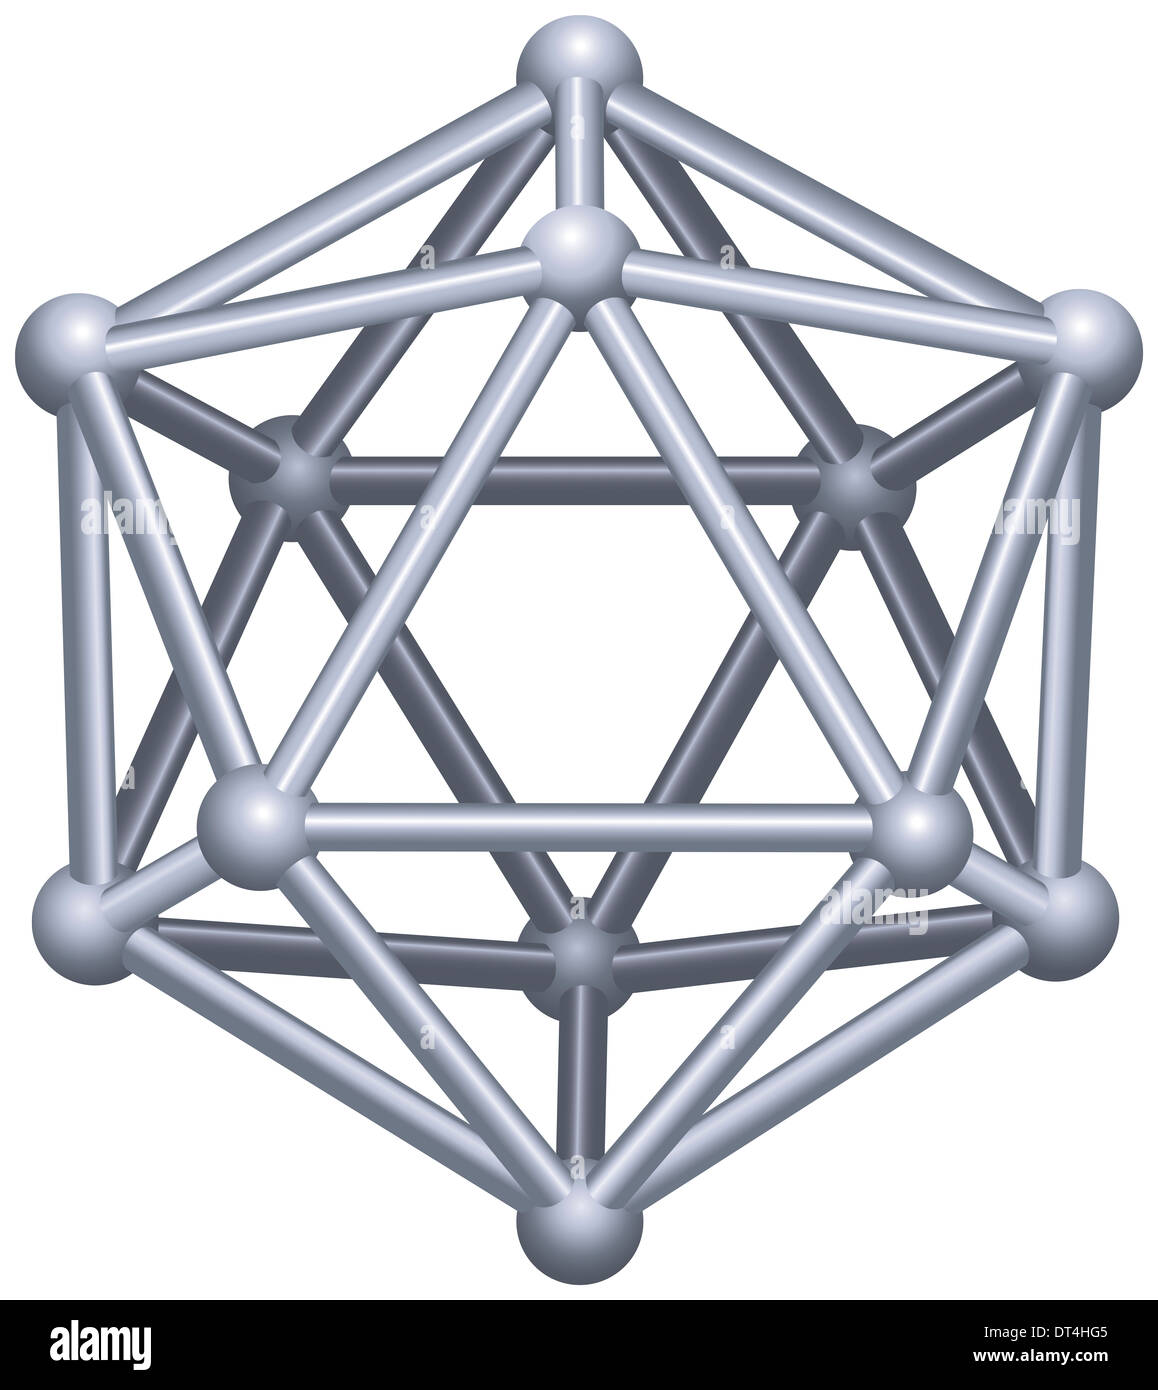 Icosaedro. Un solido platonico in geometria, un poliedro con venti facce triangolari, trenta bordi e dodici vertici. Foto Stock